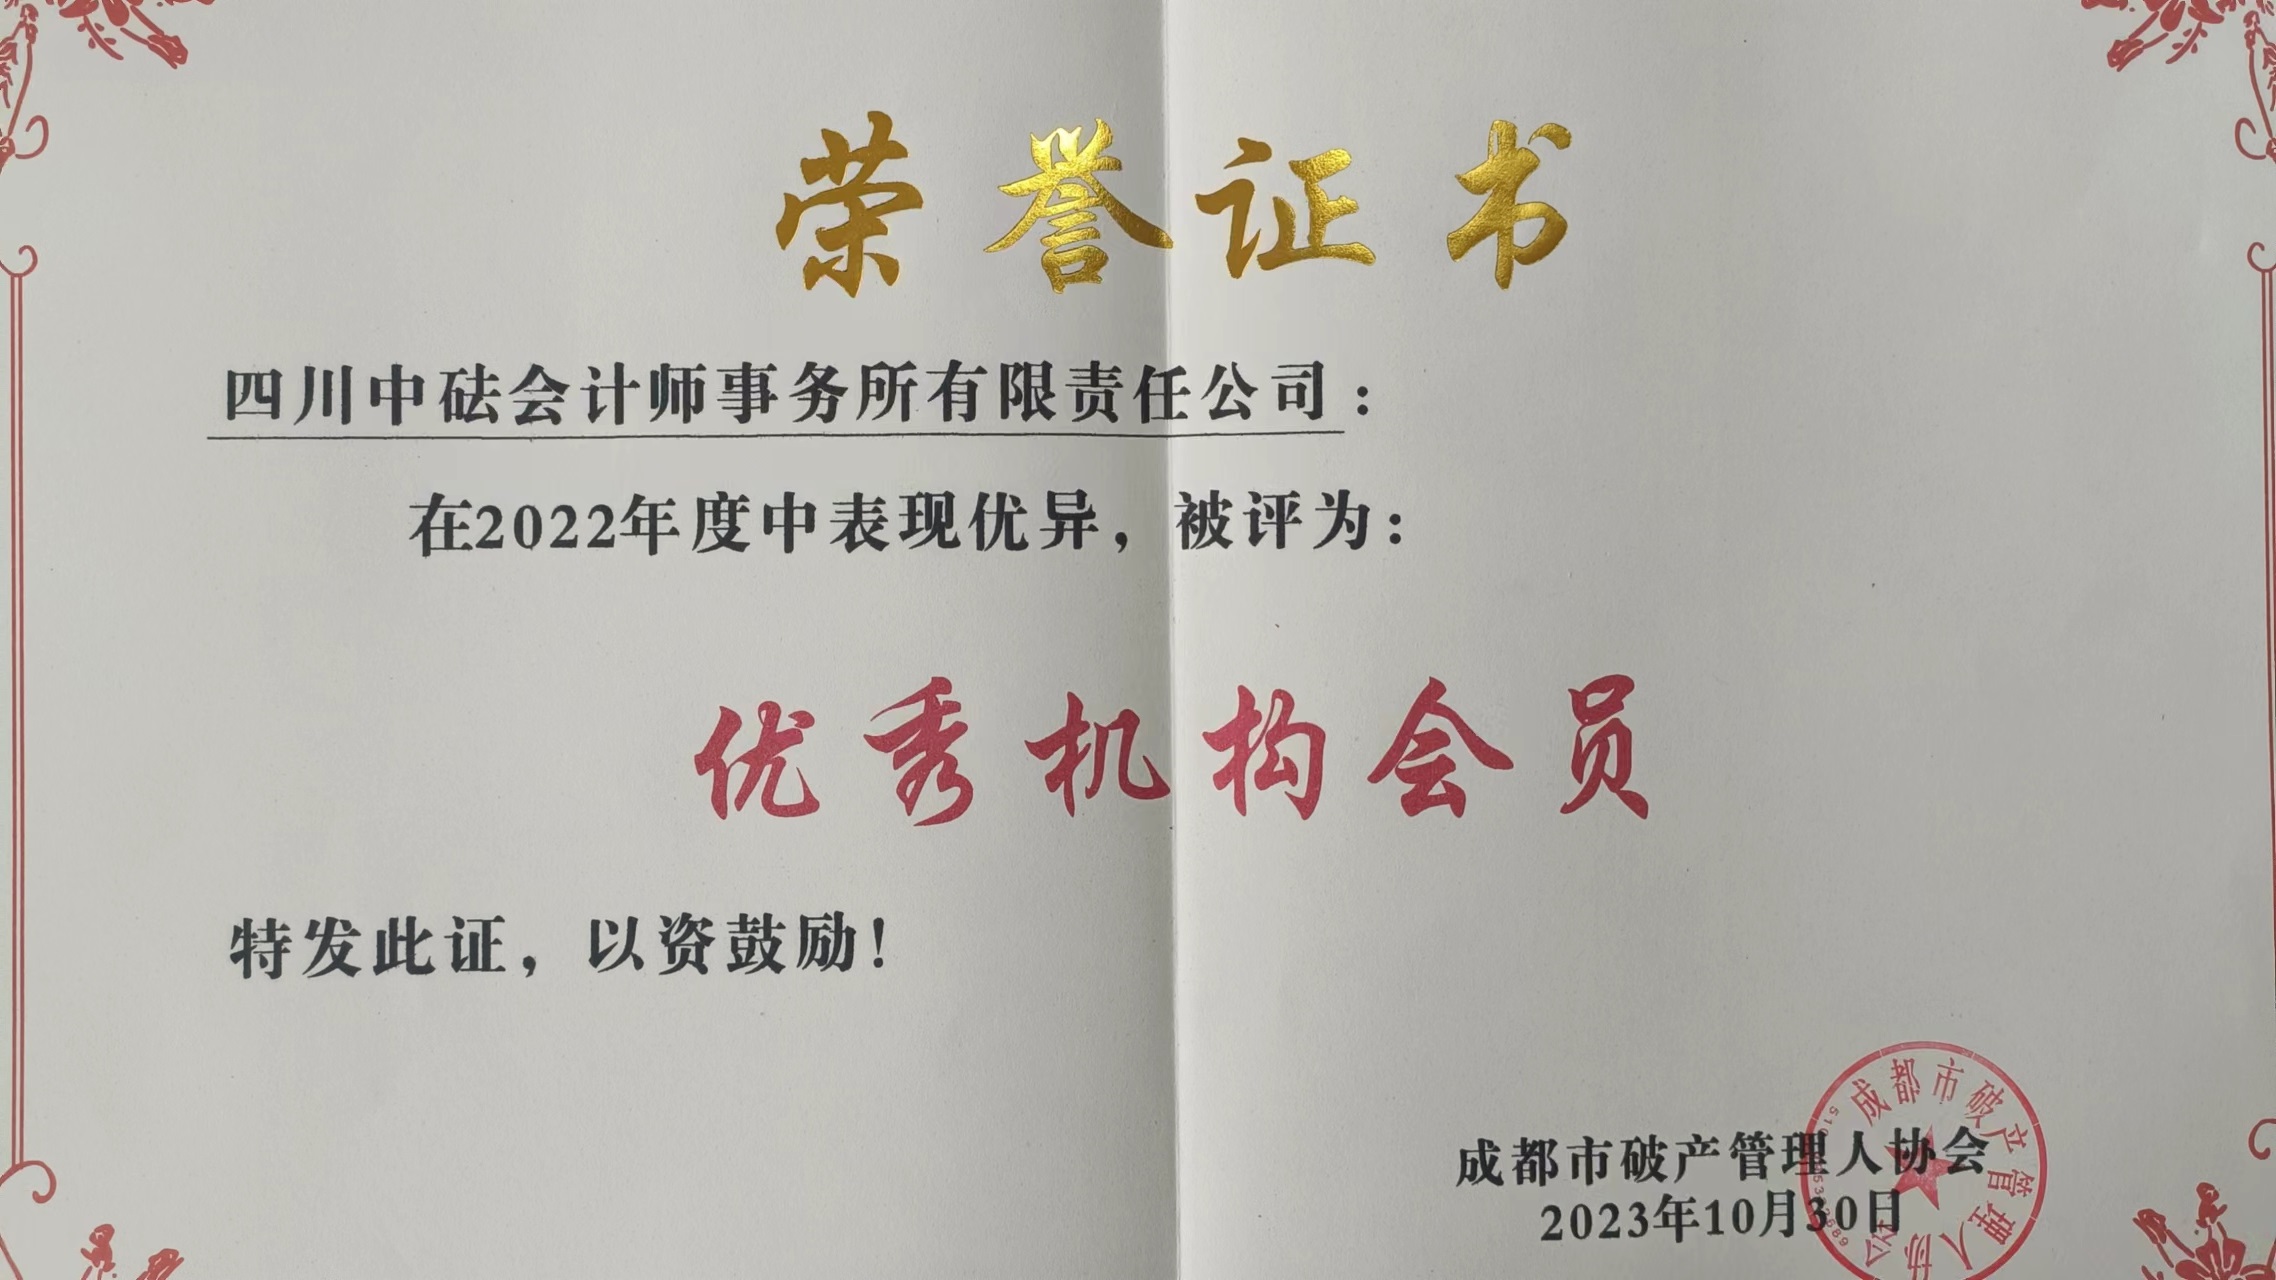 四川中砝会计师事务所被蓉管协授予“2022年度优秀机构会员”称号